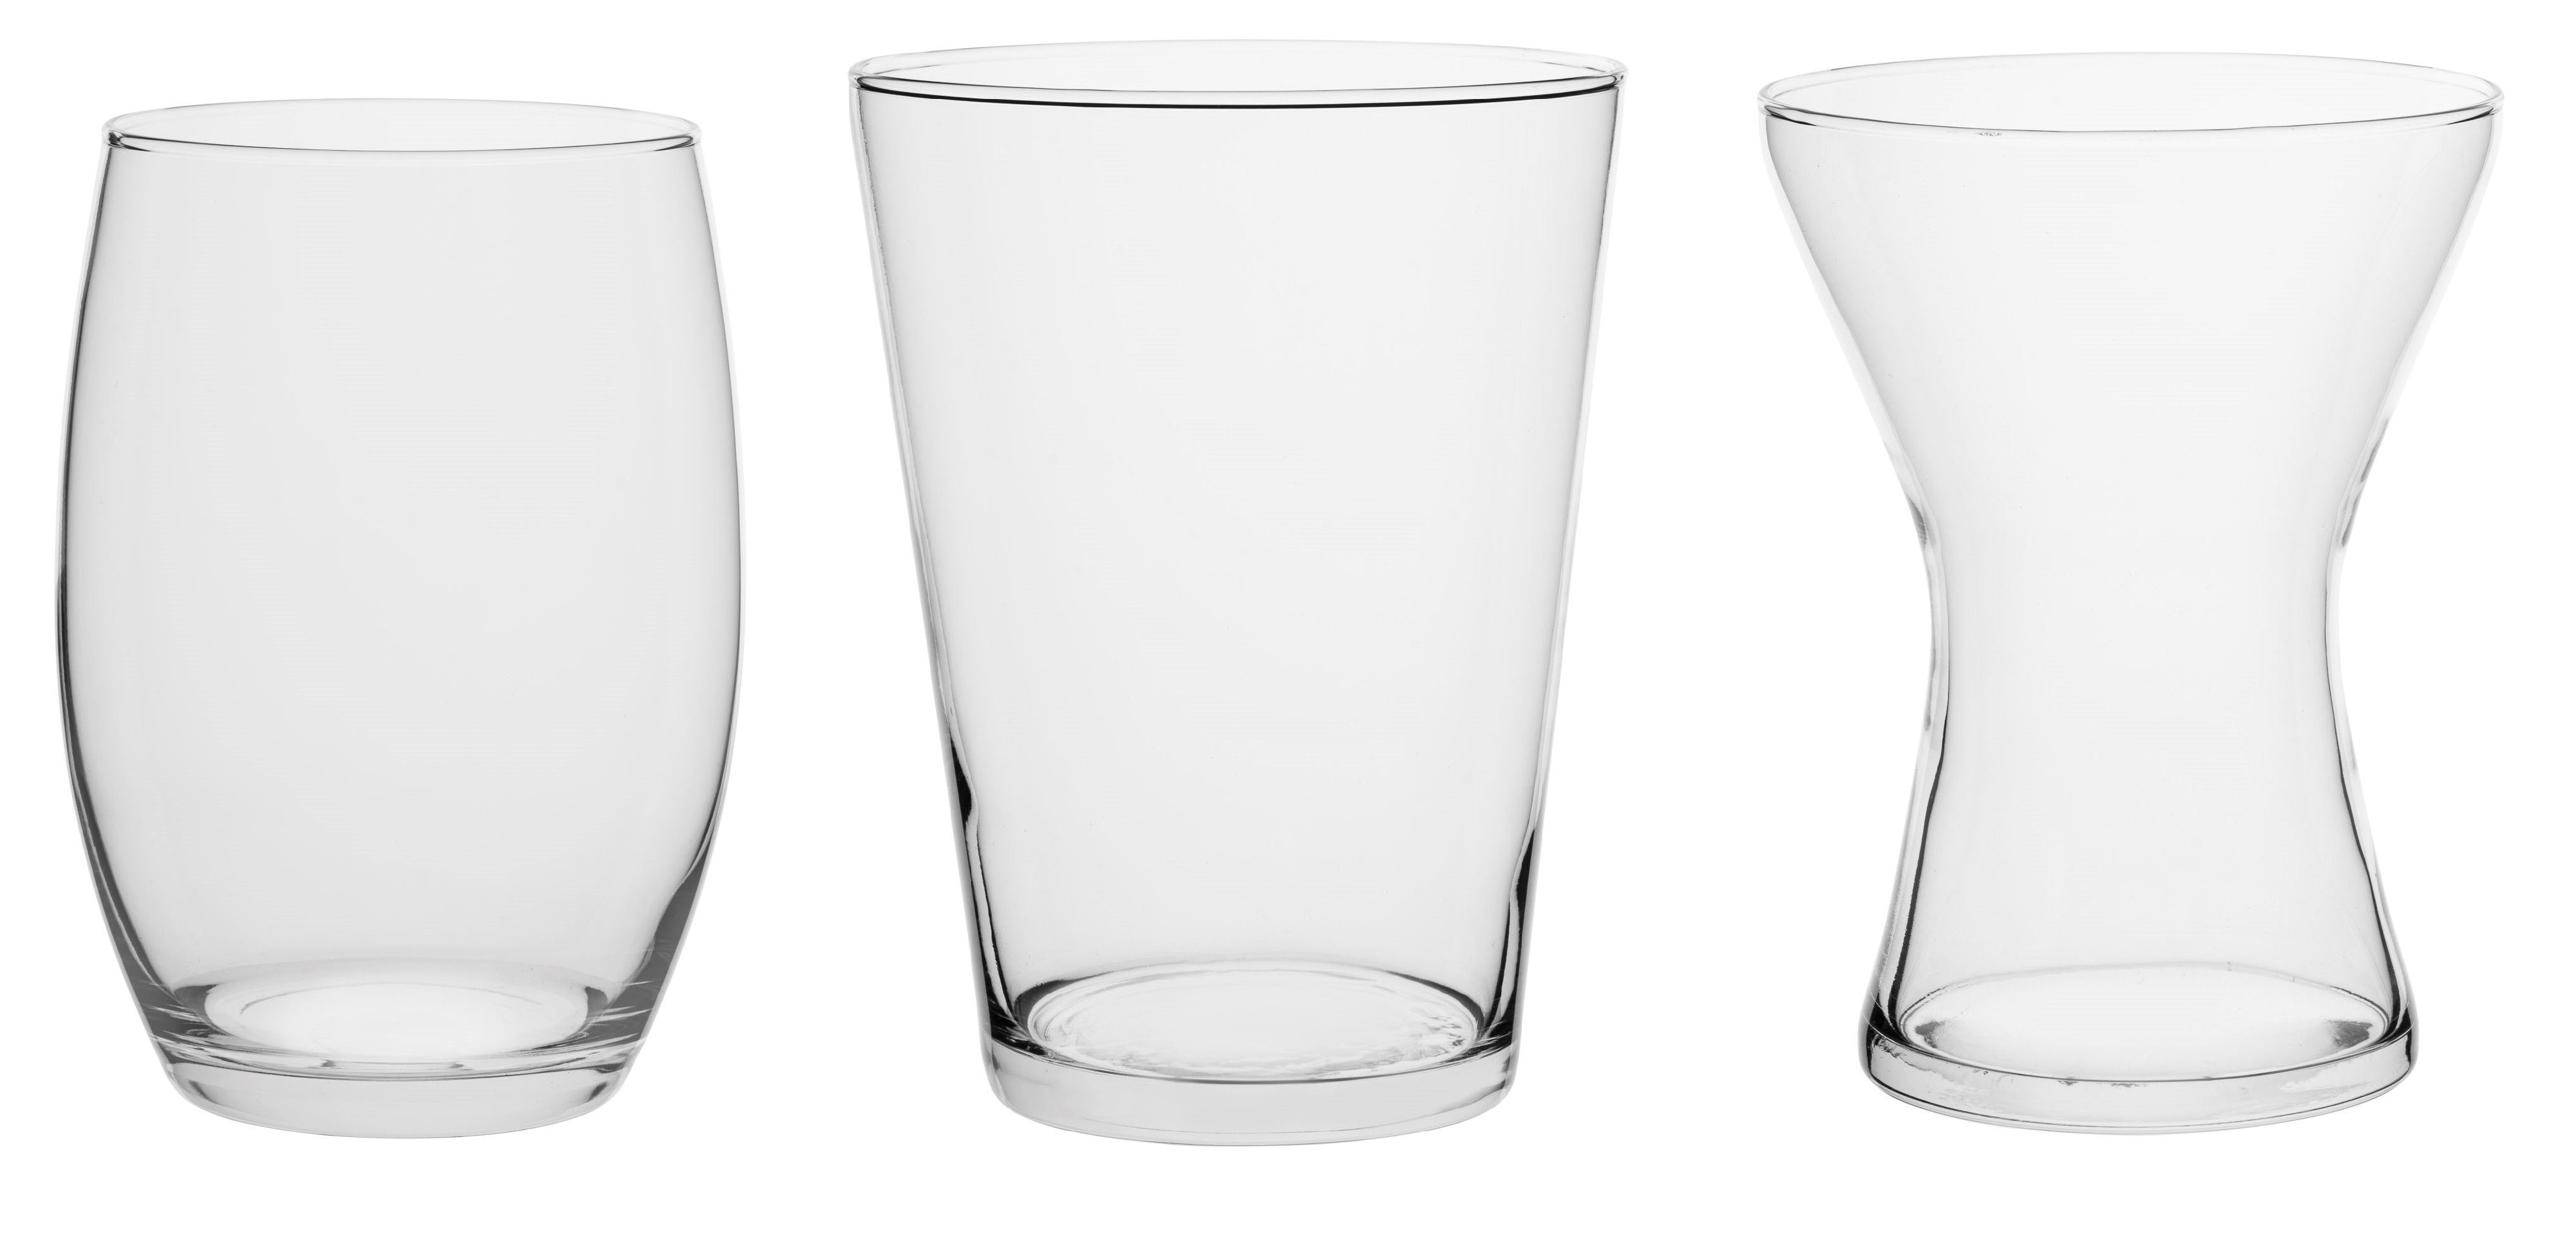 GlasArt Dekovase 2er SET Dekovasen aus Klarglas 20cm hoch, Auswahl aus drei Formen bauchig konisch trapez, handgefertigt (2er-Set, 2, 2 St., Bestehend aus 2x gleiche Vase nach Wahl), klarglas